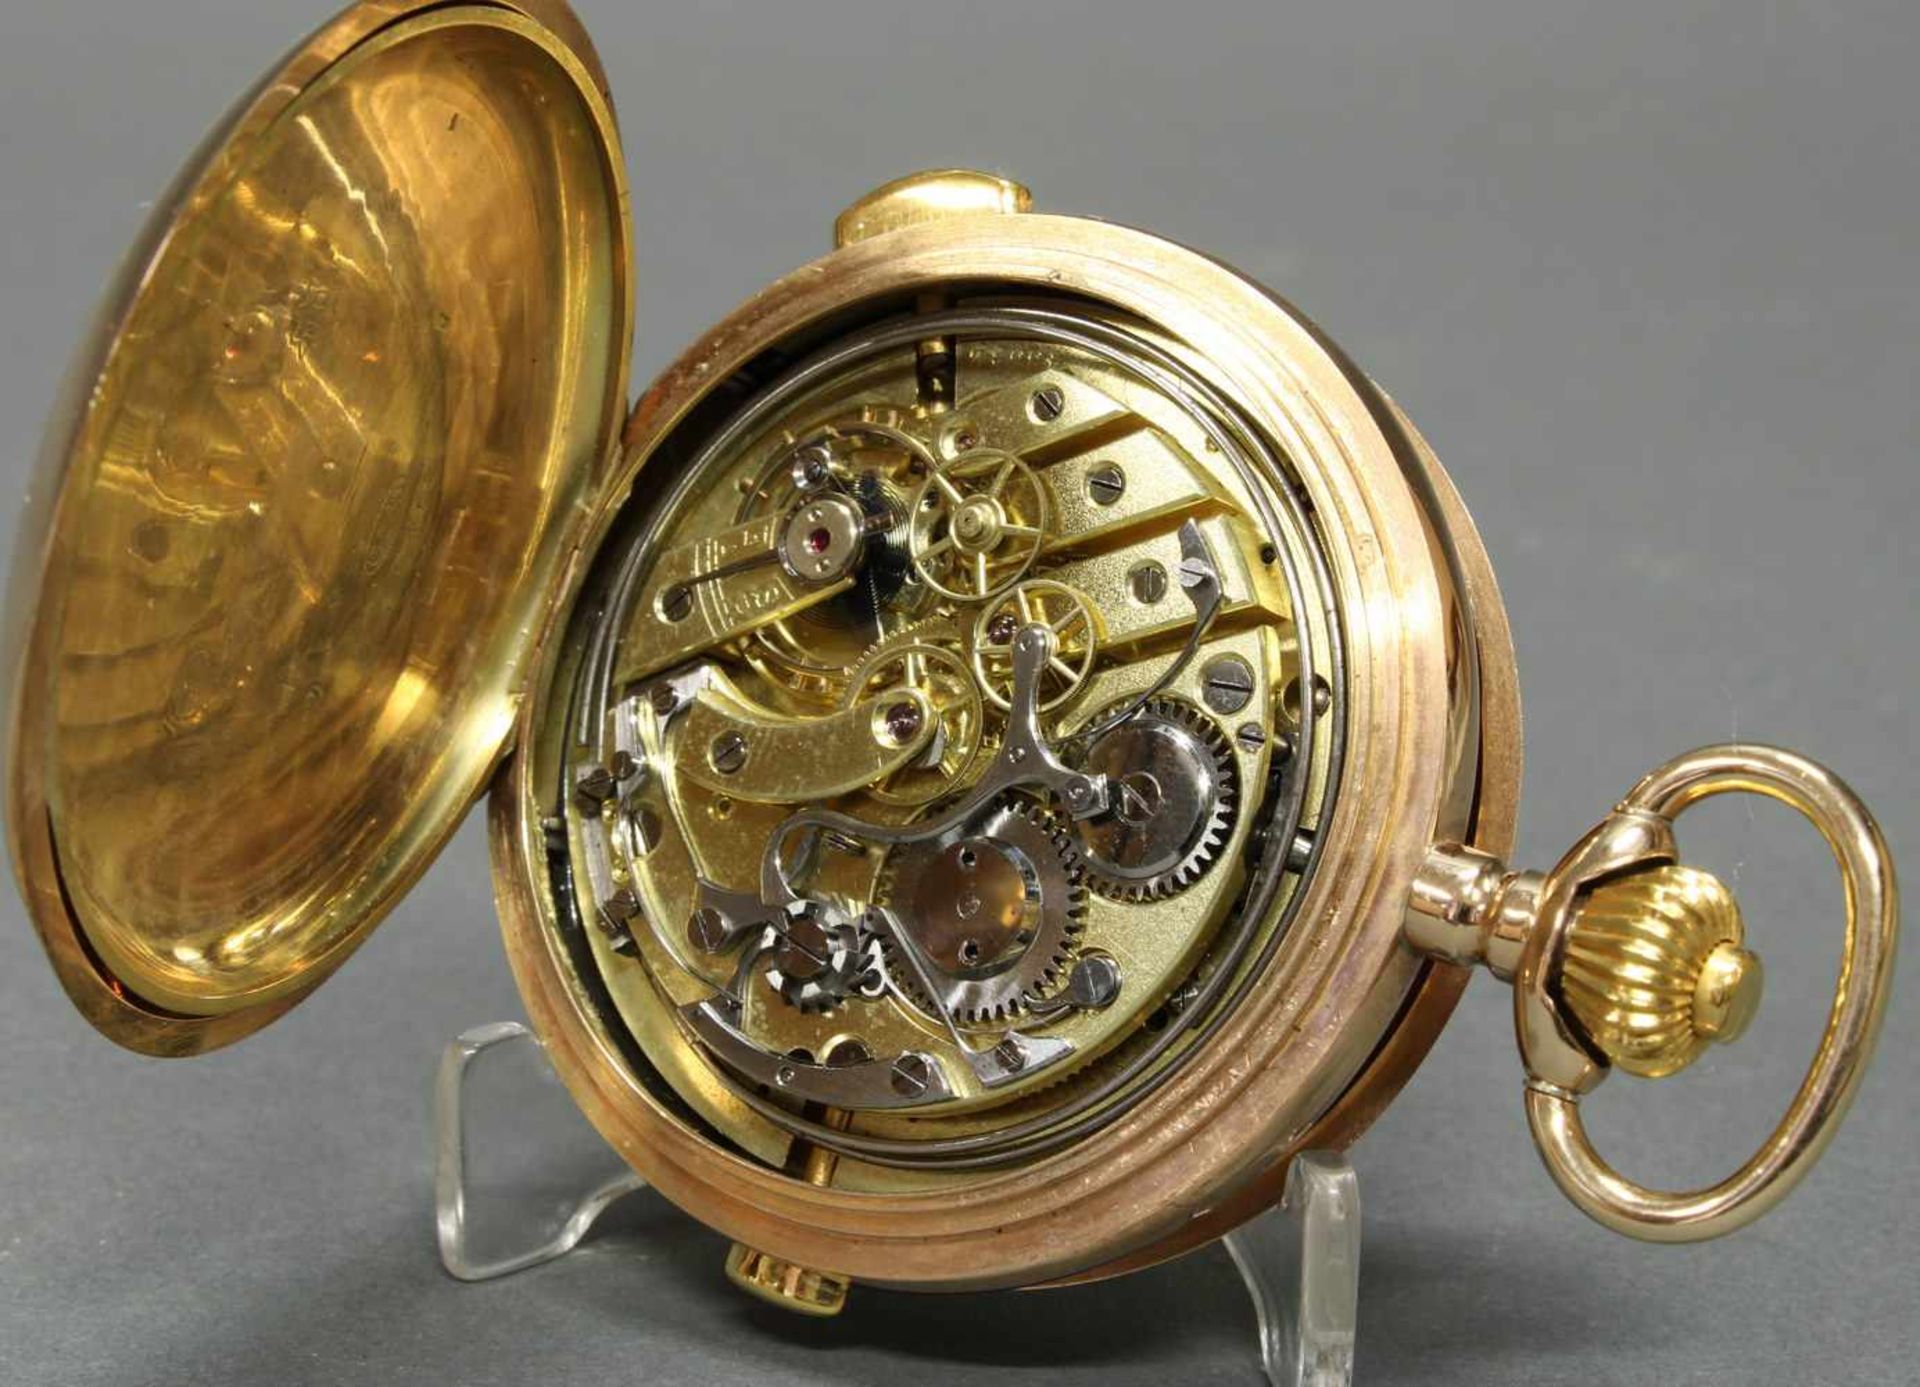 Herrentaschenuhr, Savonette, um 1900, 1/4-Stunden-Repetition, Chronograph, GG 585, Staubdeckel Gold, - Bild 5 aus 6